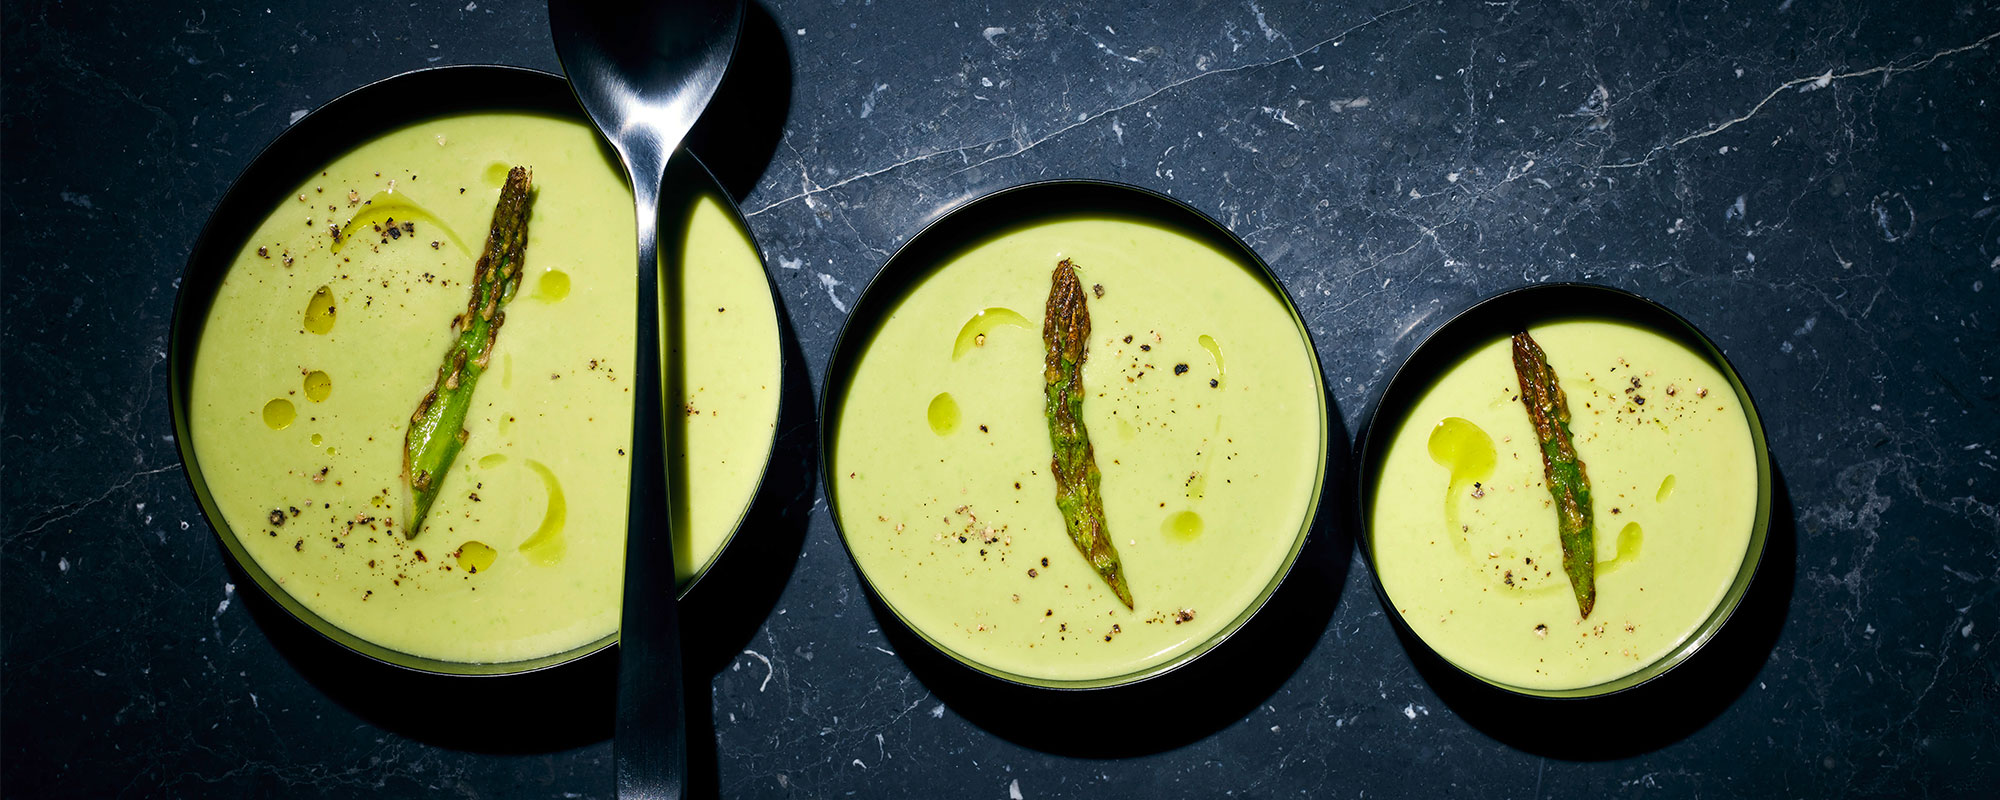 Food Styling des House of Food gezeigt an drei Schalen mit Spargelcremesuppe